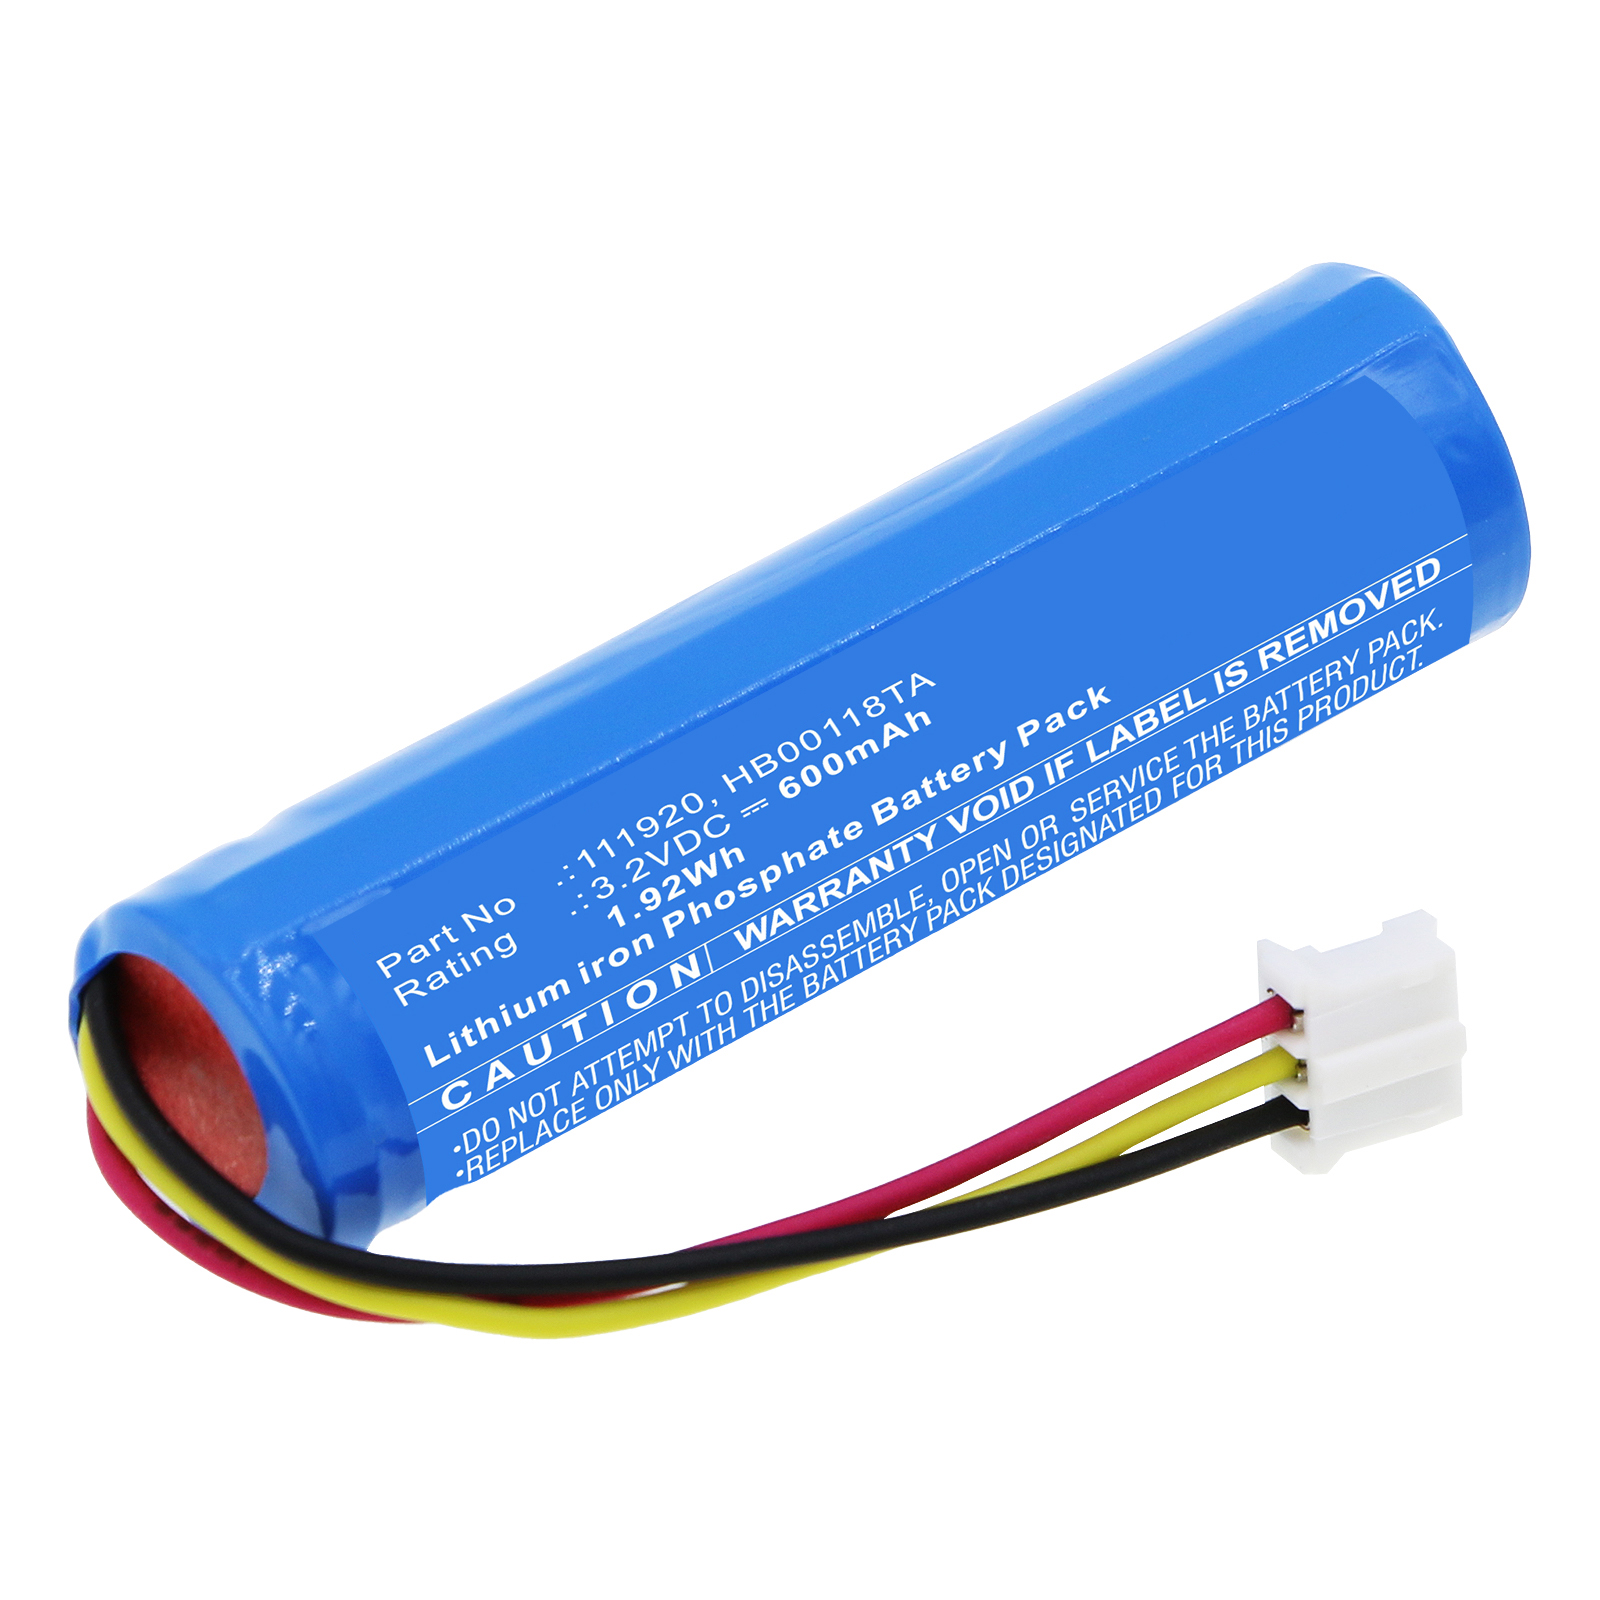 Synergy Digital Emergency Lighting Battery, Compatible with Legrand 111920 Emergency Lighting Battery (LiFePO4, 3.2V, 600mAh)